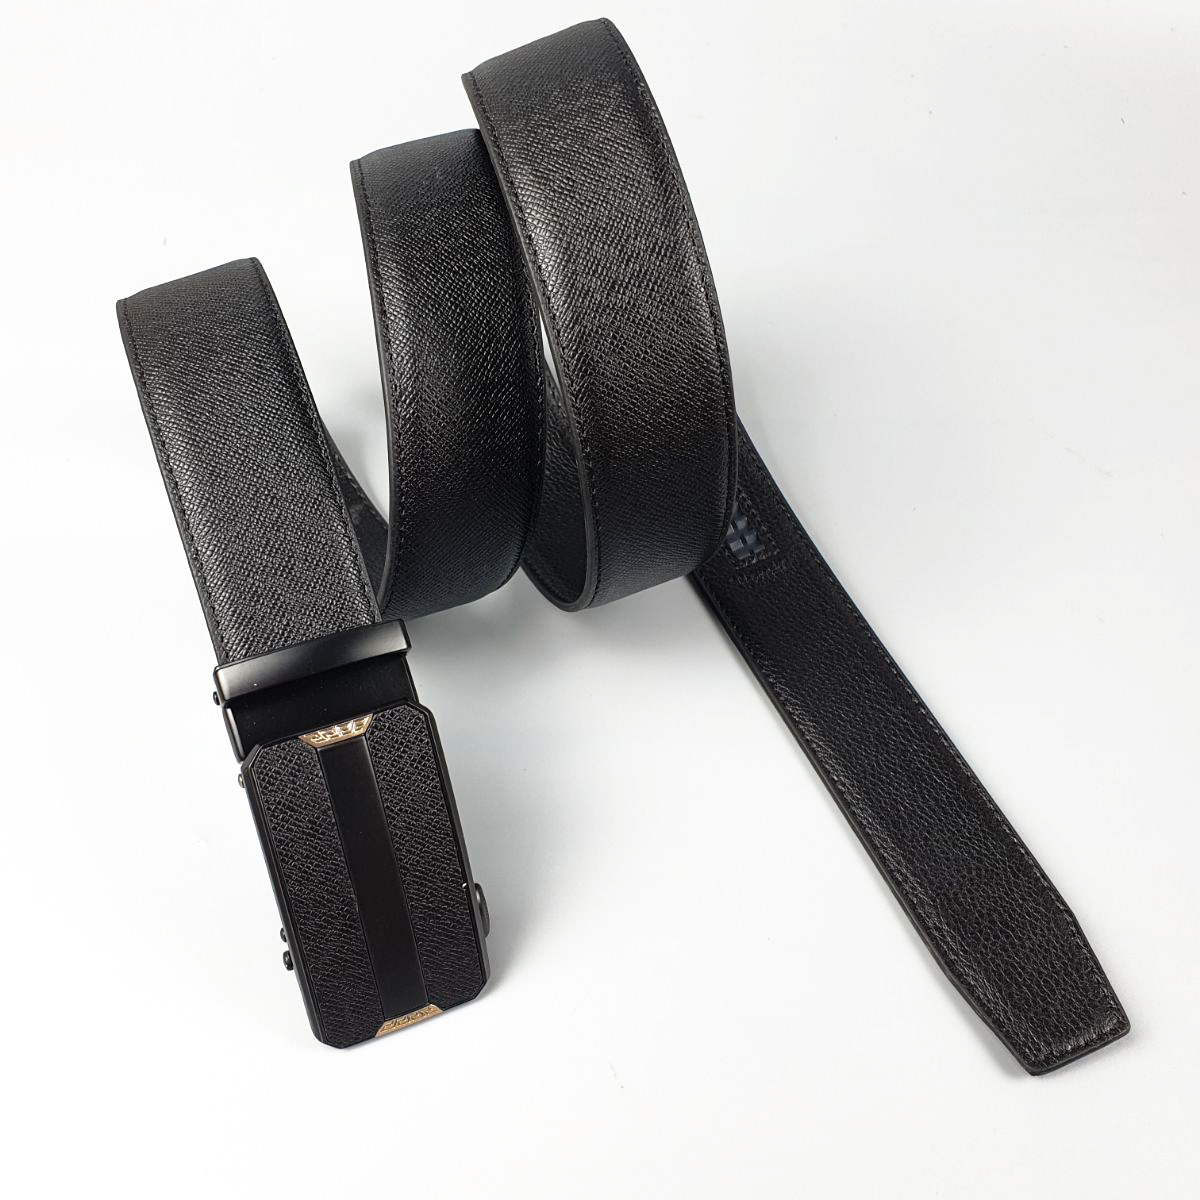 Thắt lưng nam dây nịt khóa trượt dây lưng chất liệu da bò Safiano 3 lớp thời trang thanh lịch phù hợp công sở BL118